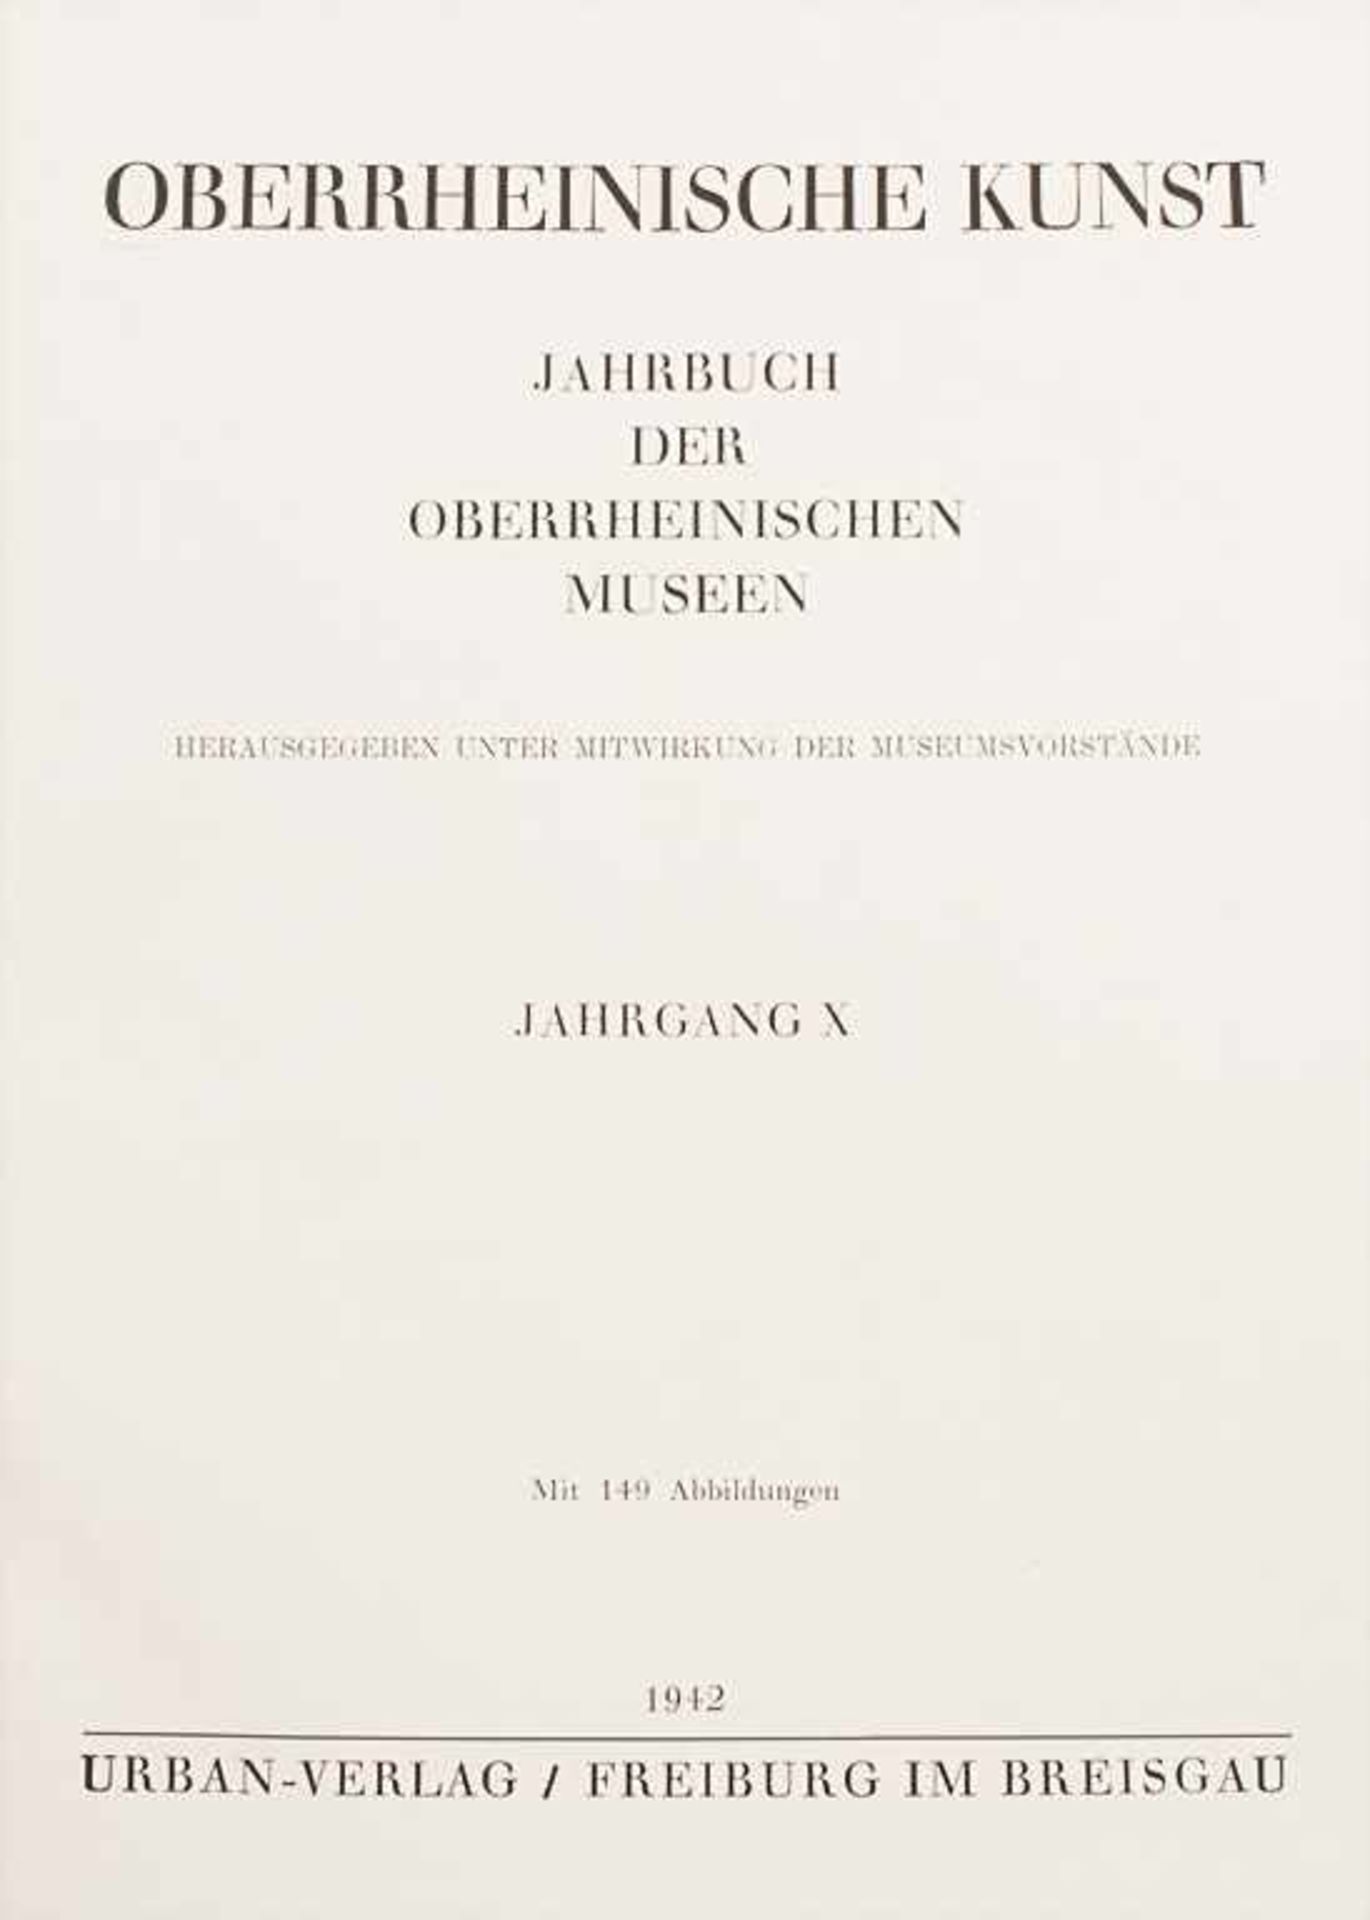 Oberrheinische Museen (Hg.): 'Oberrheinische Kunst', Jahrgänge 5, 9 und 10